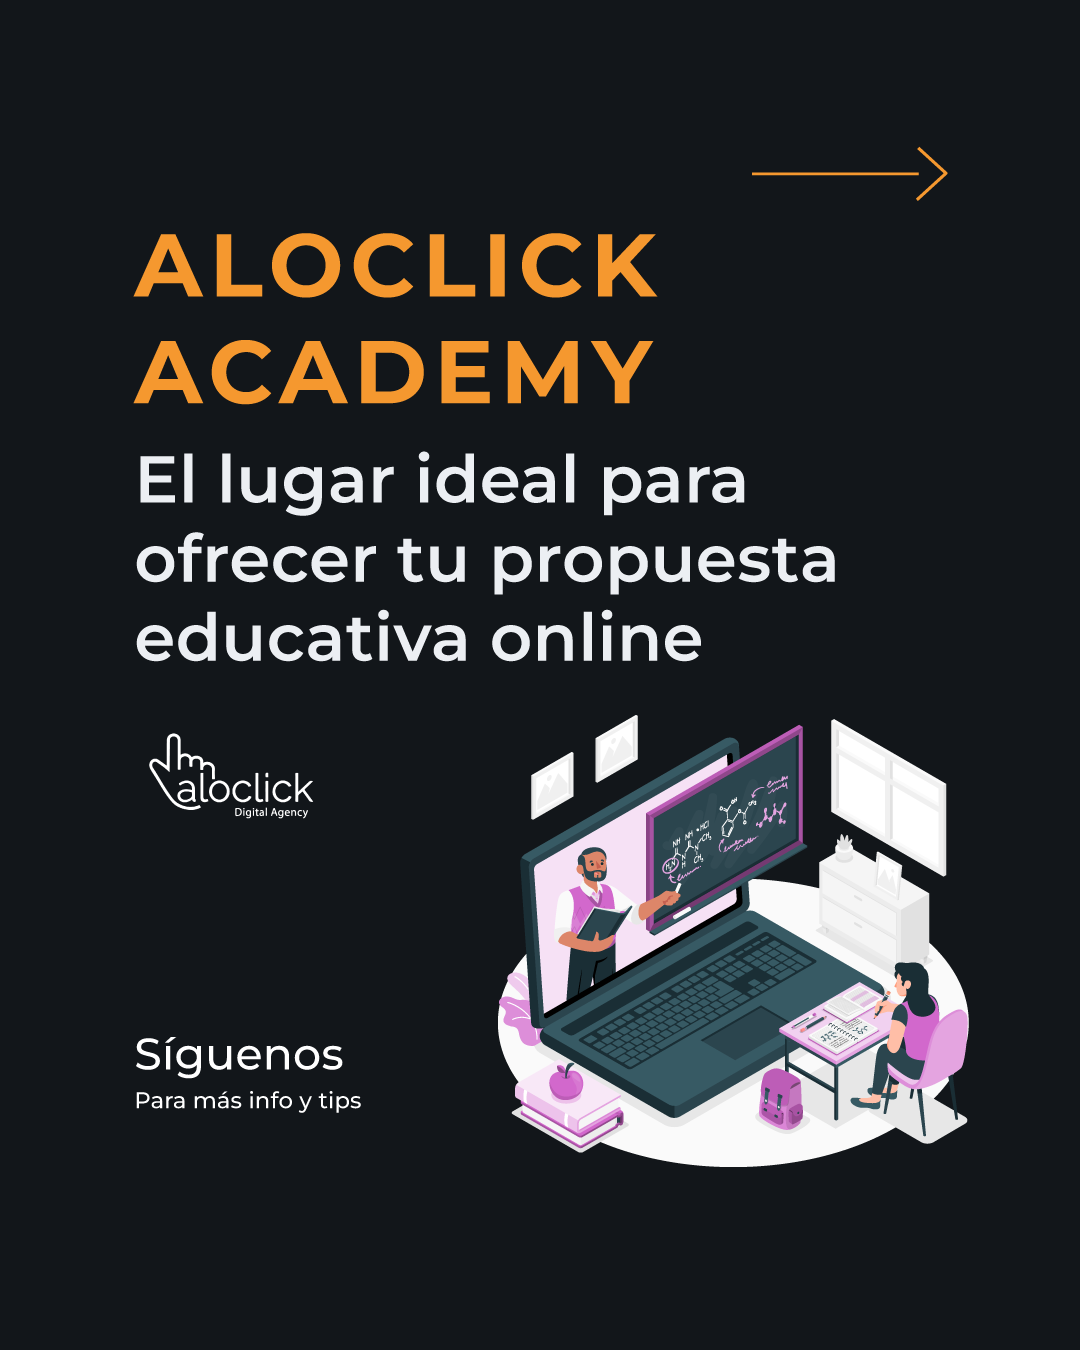 ¡Únete a Aloclick Academy!